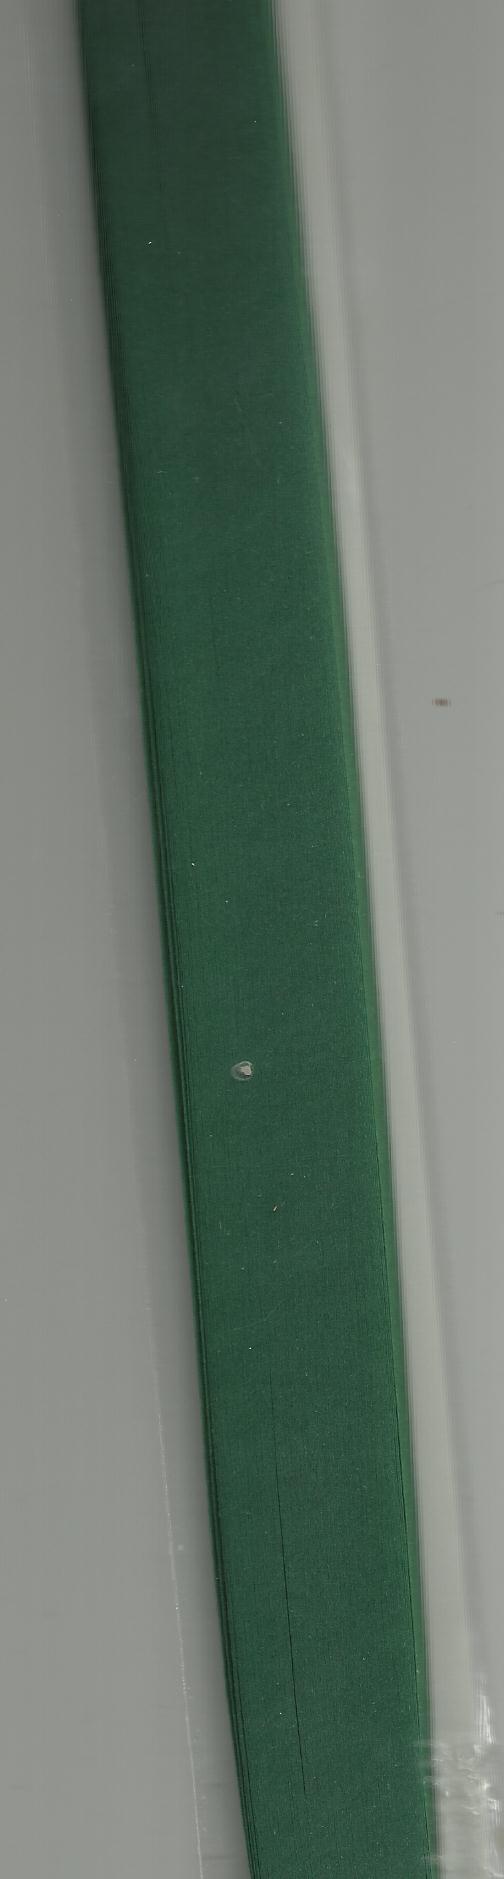 темно-зеленый набор для квиллинга